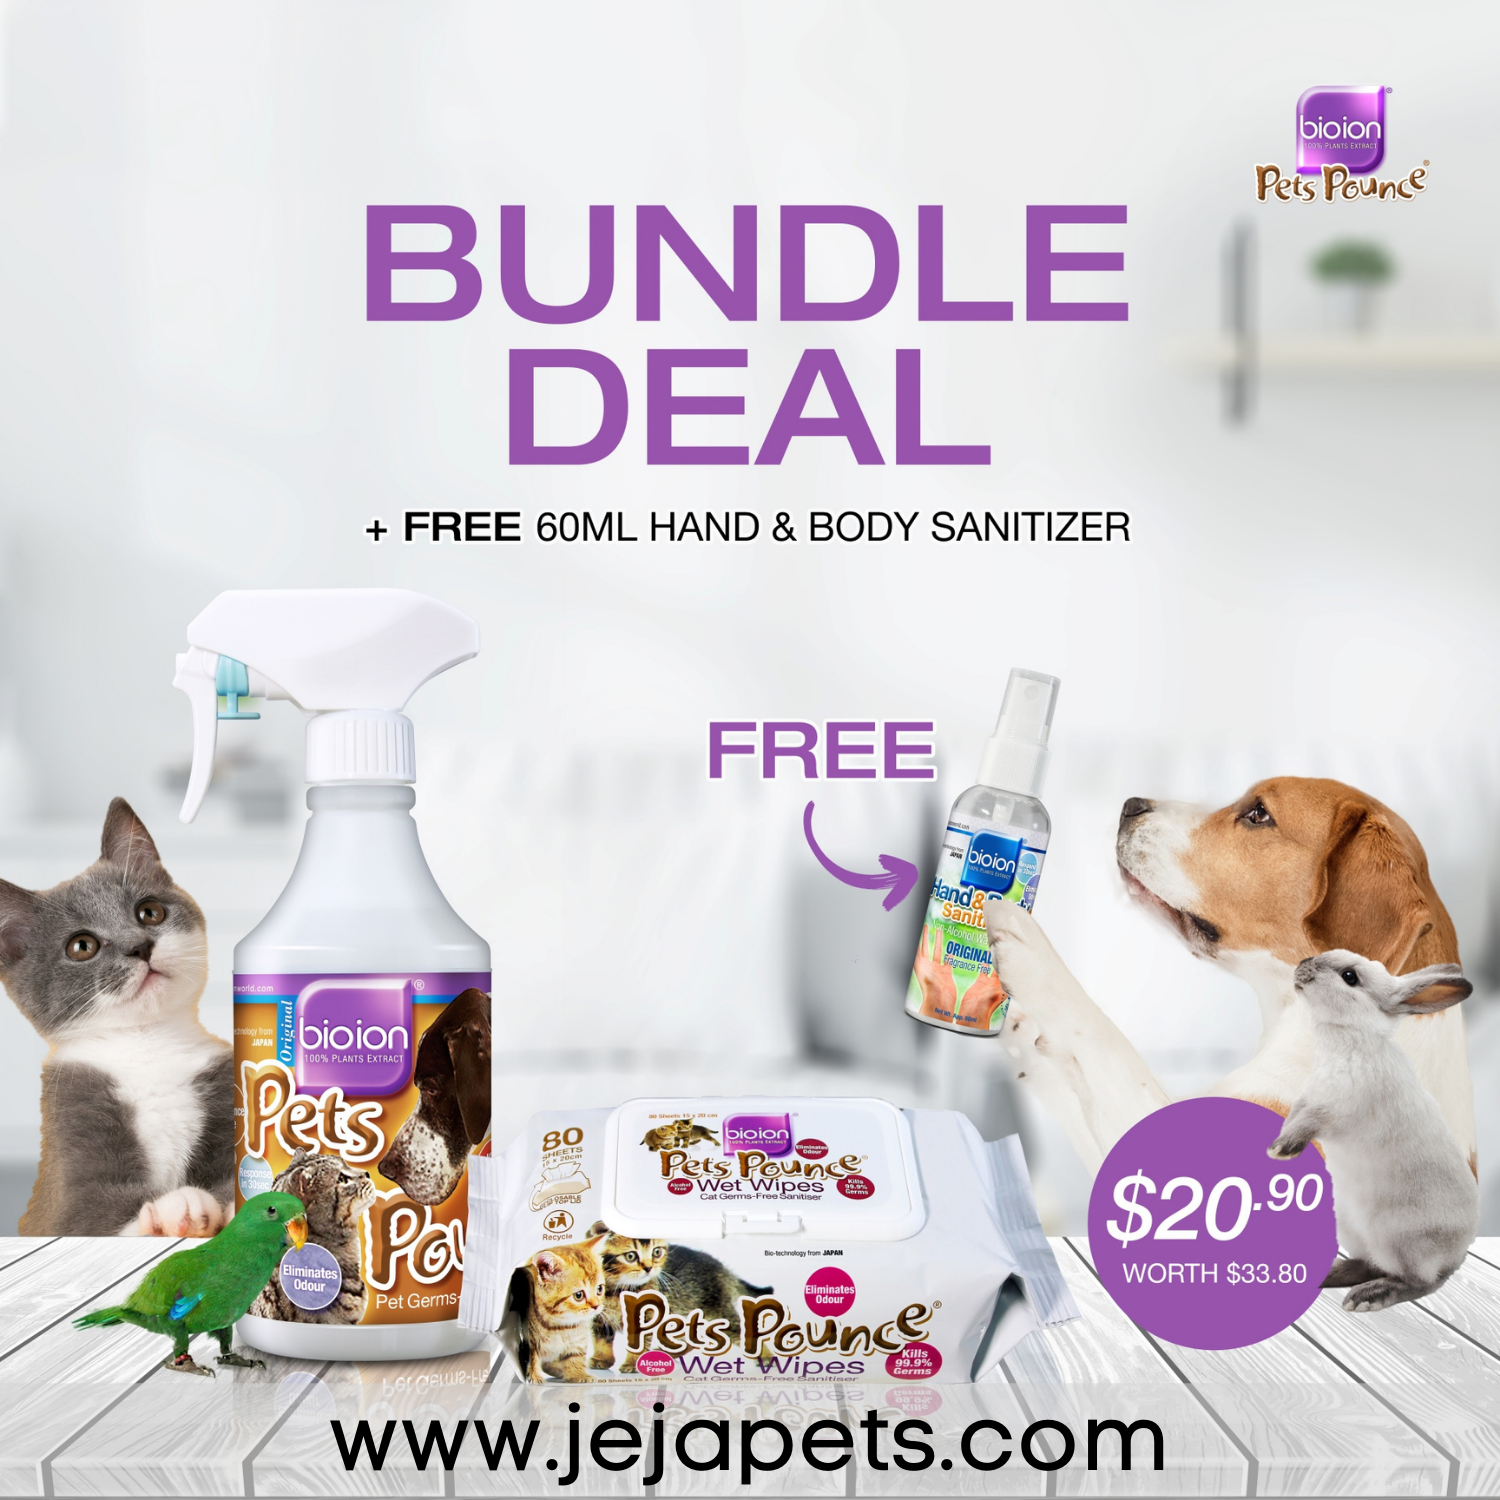 [PROMO: $20.90/set FREE 60ml Hand & Body Sanitizer (U.P. $33.80)] Bioion Pets Pounce Bundle Deal